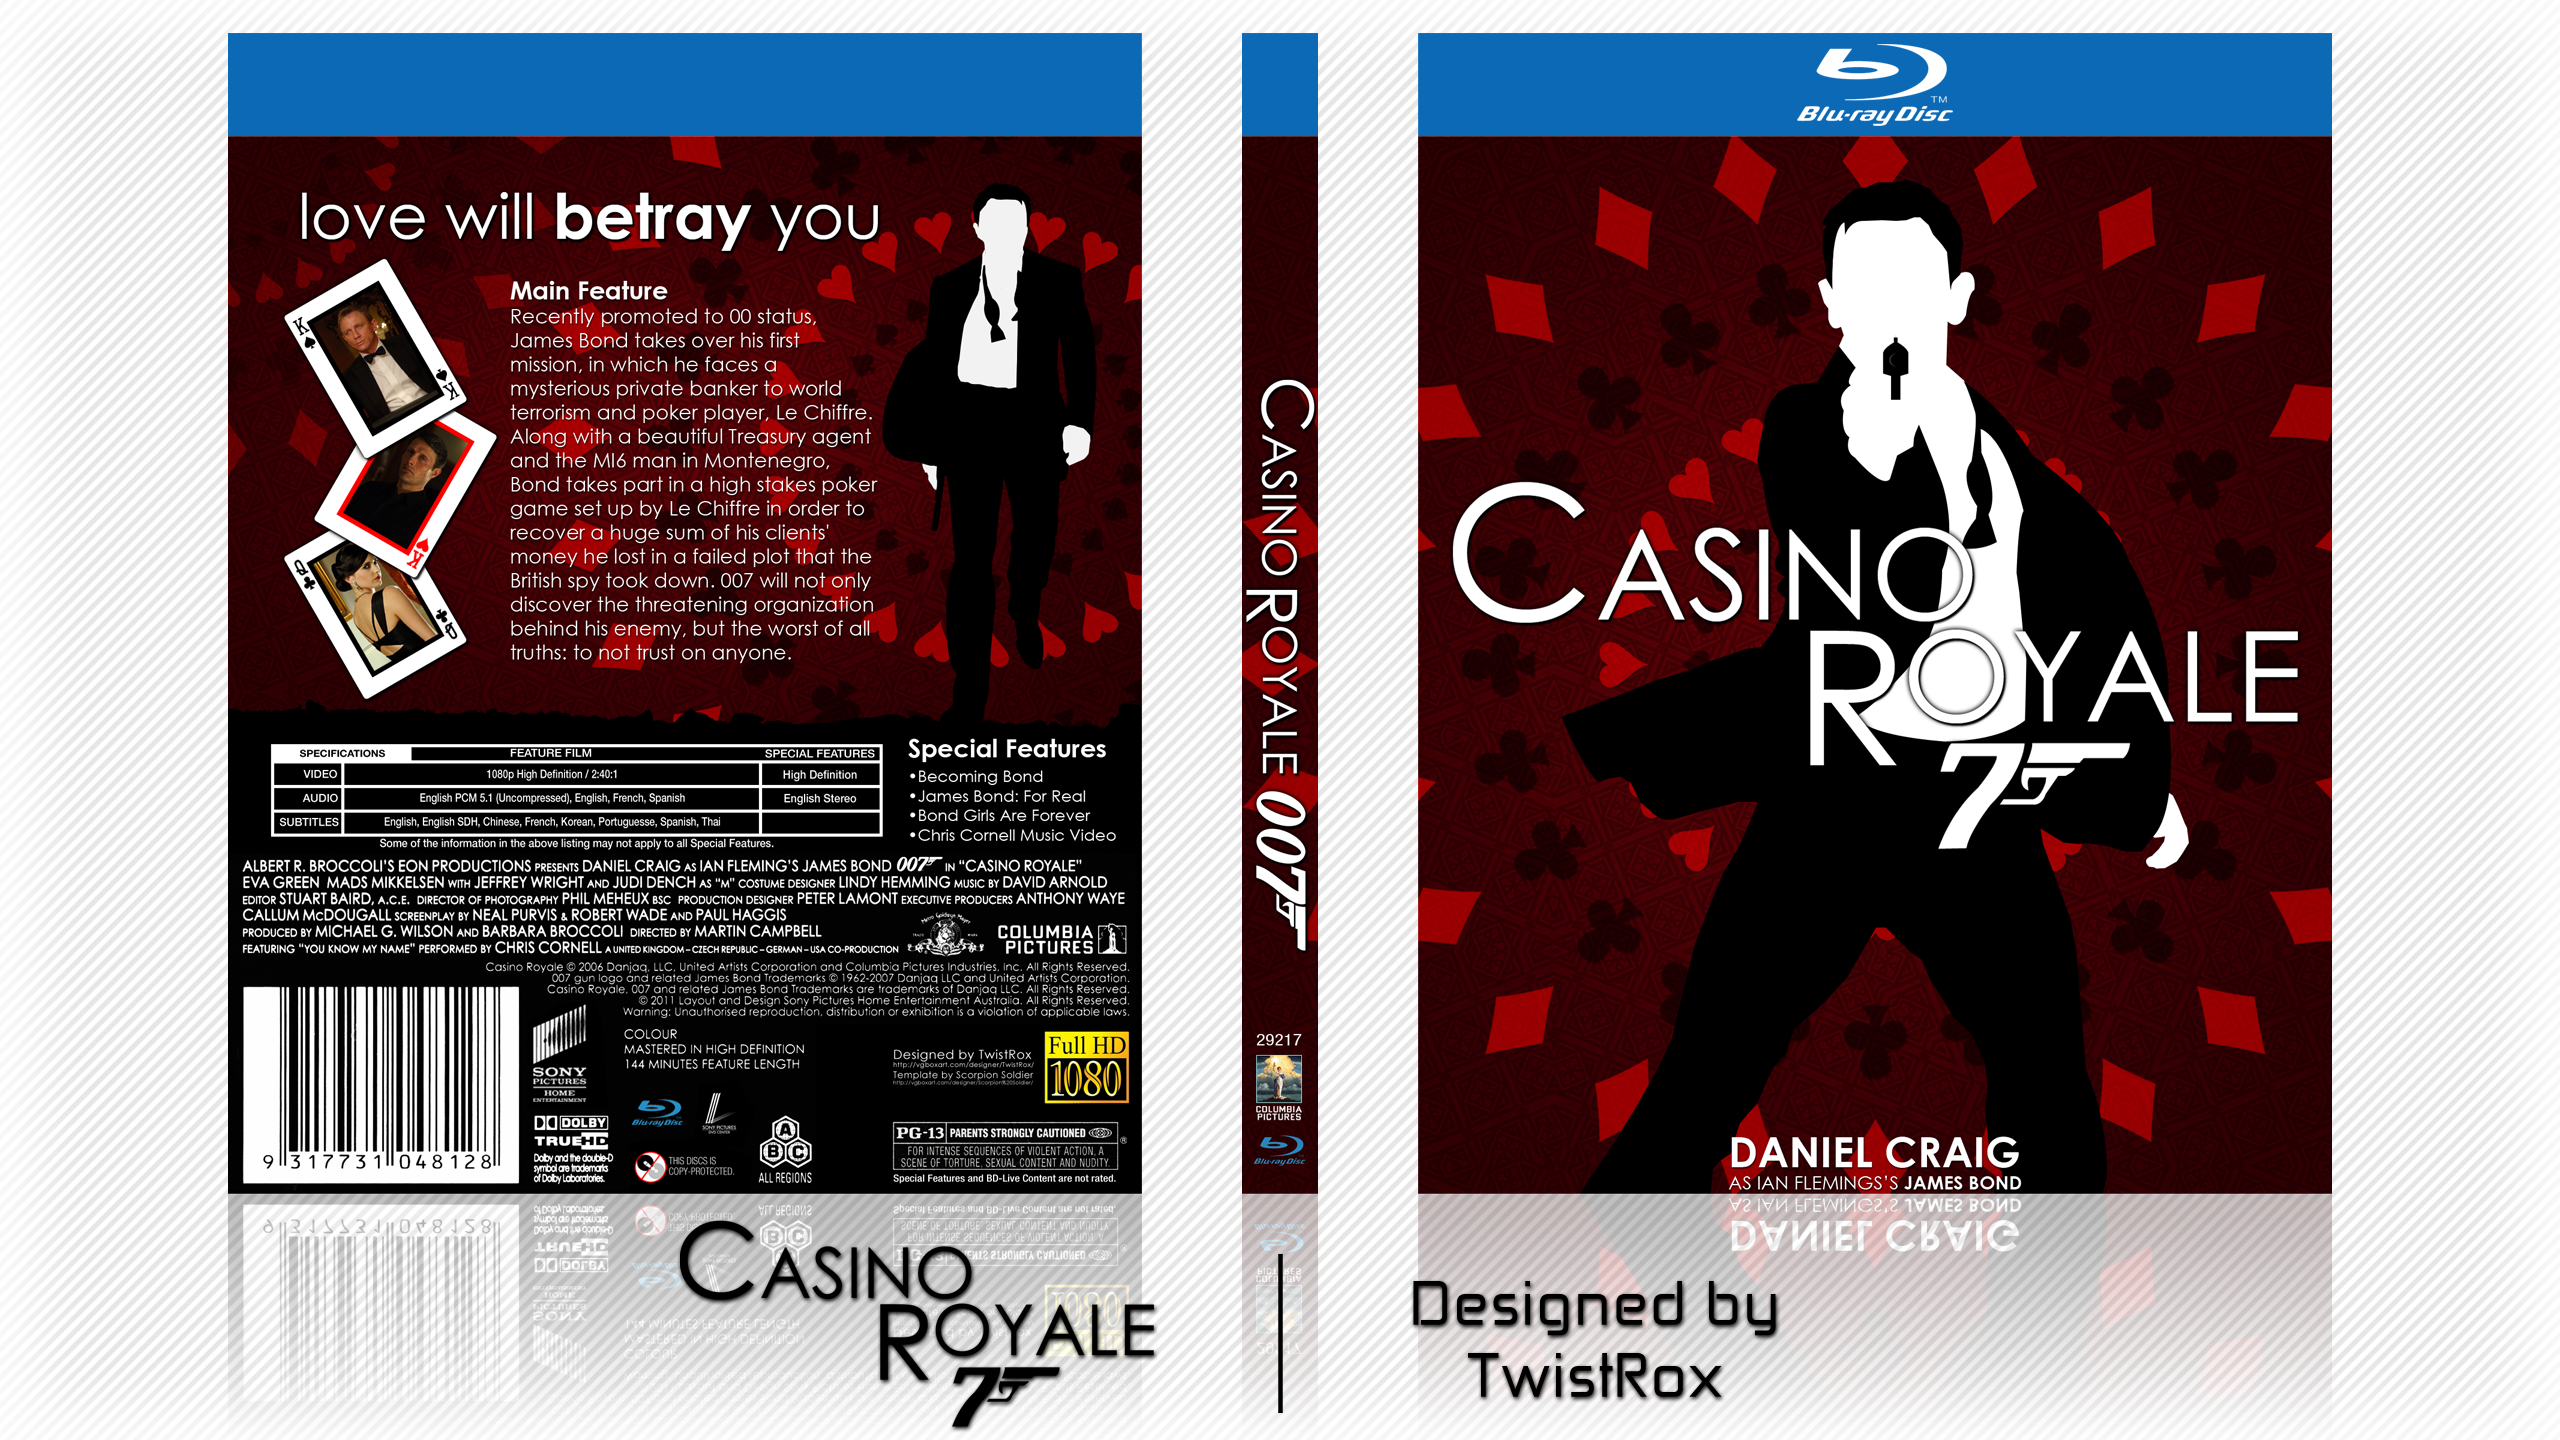 007: Casino Royale box cover